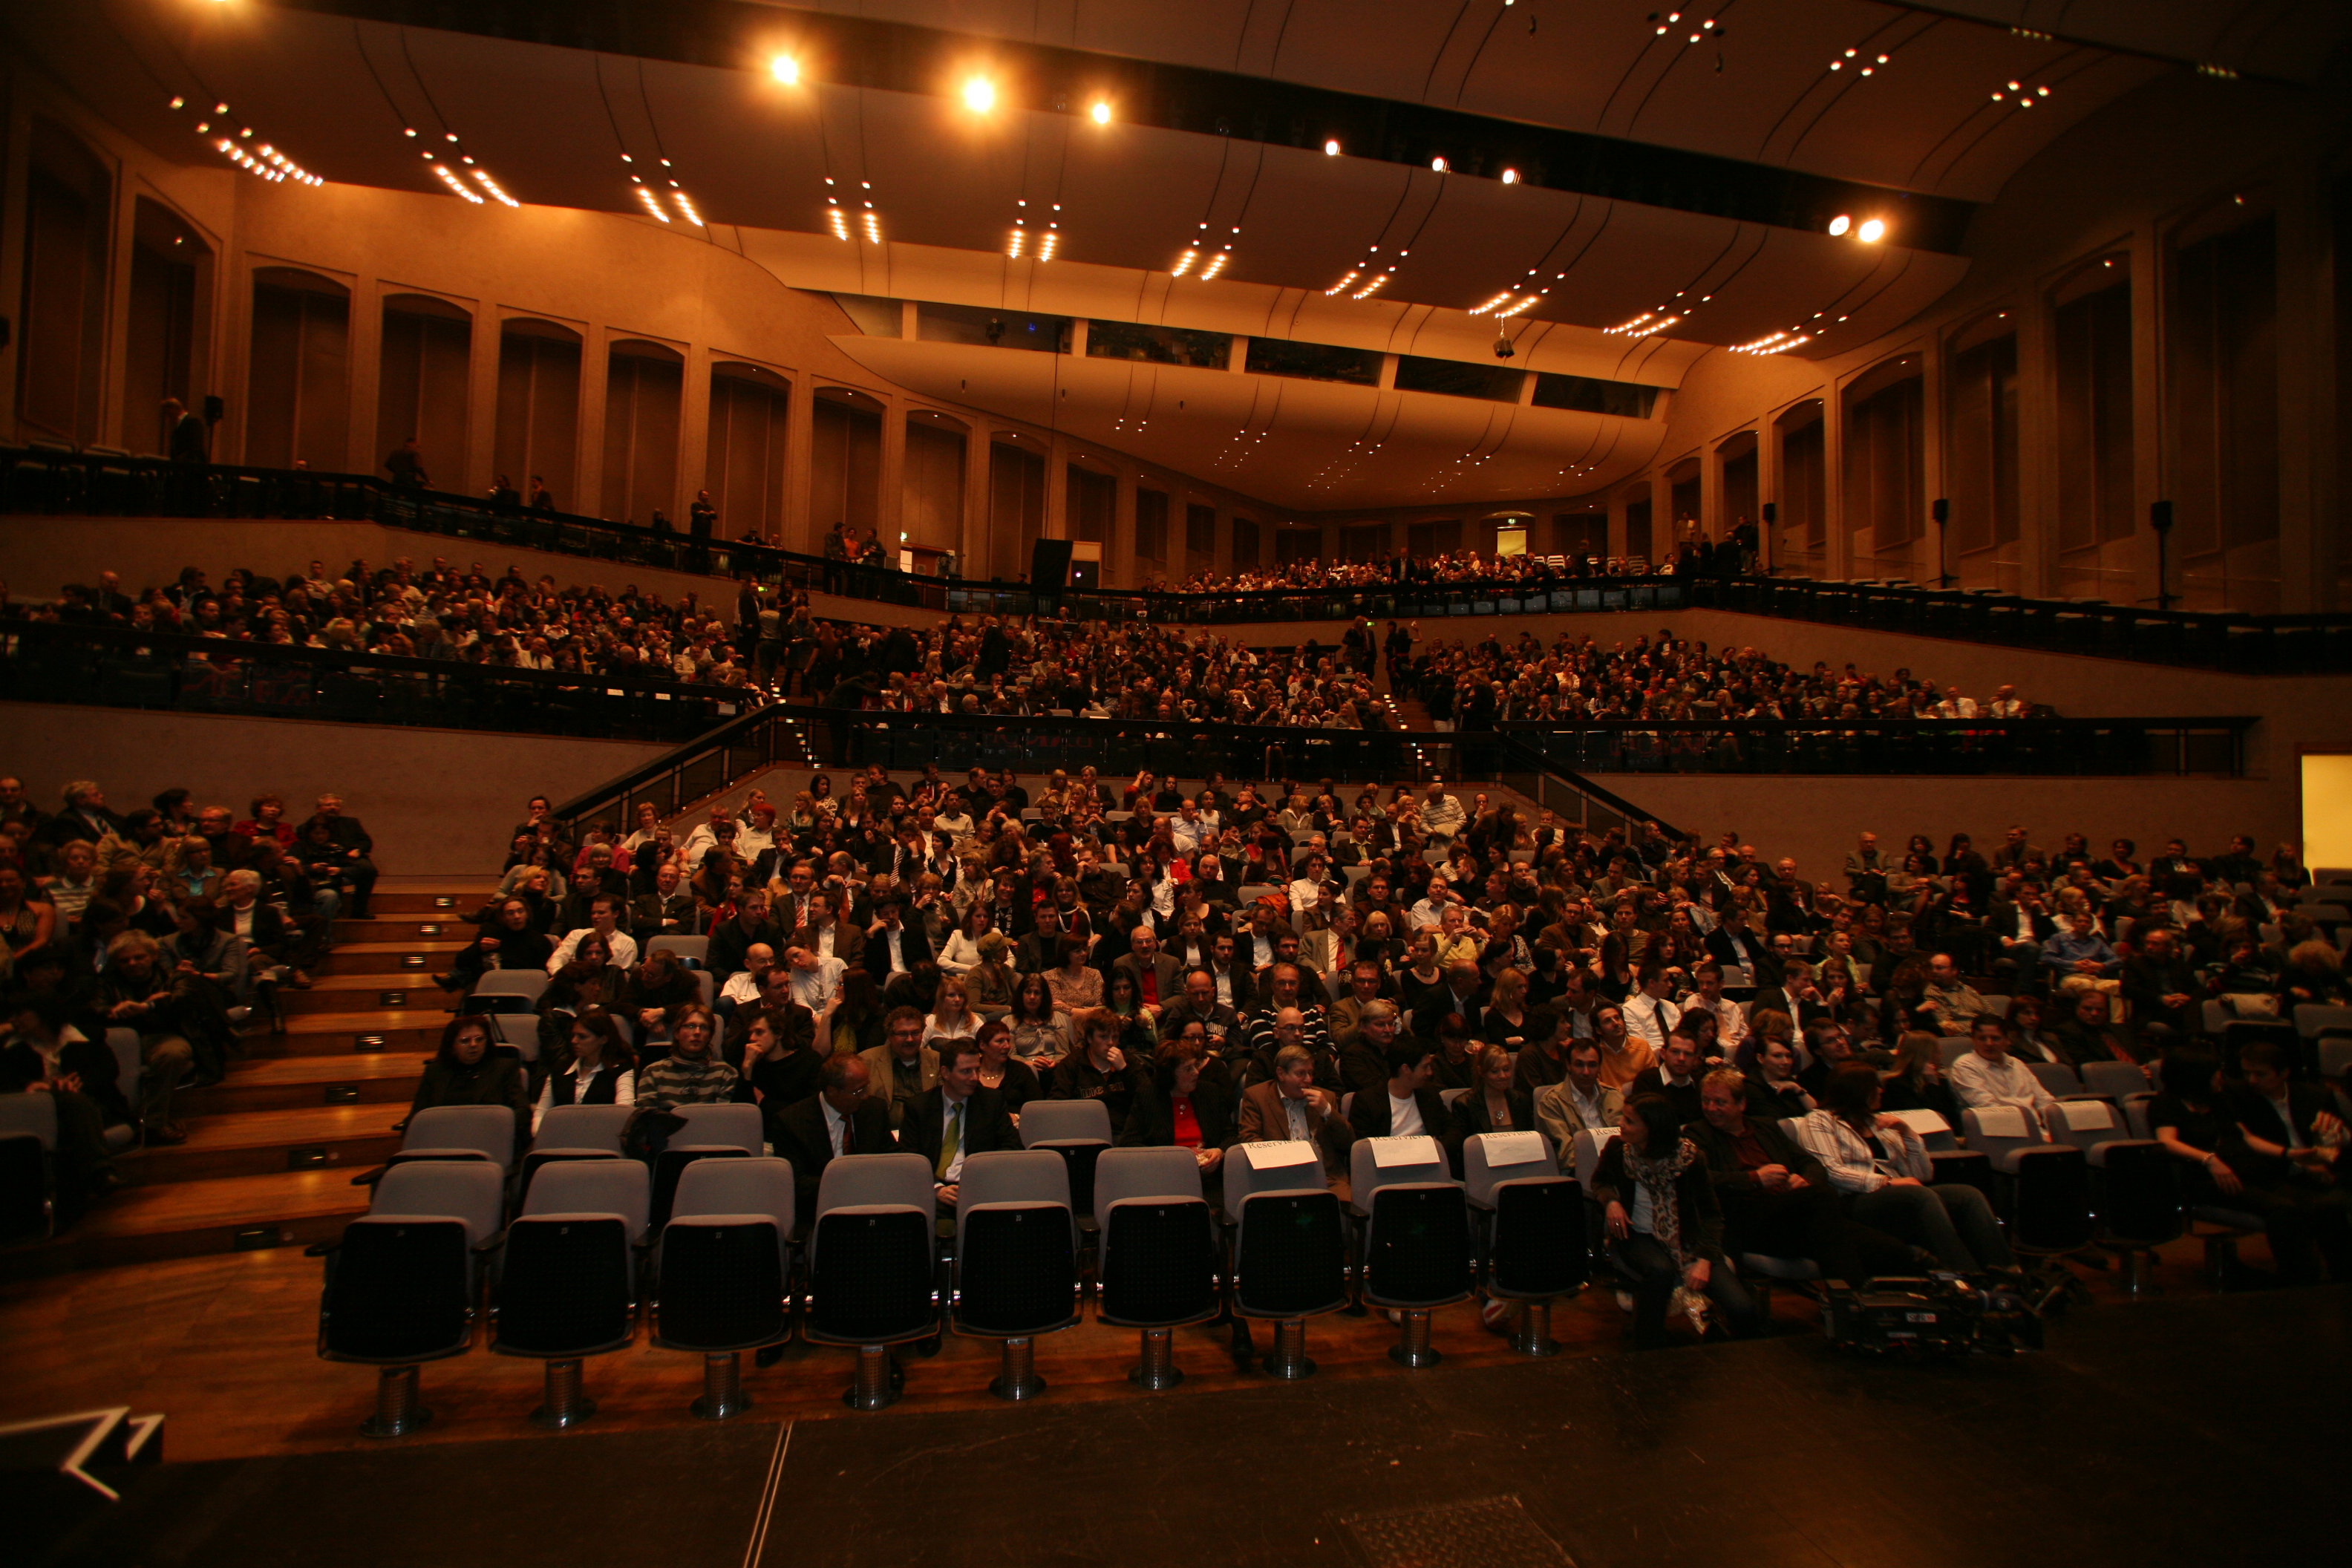 Das Auditorium mit 1200 Sitzplätzen